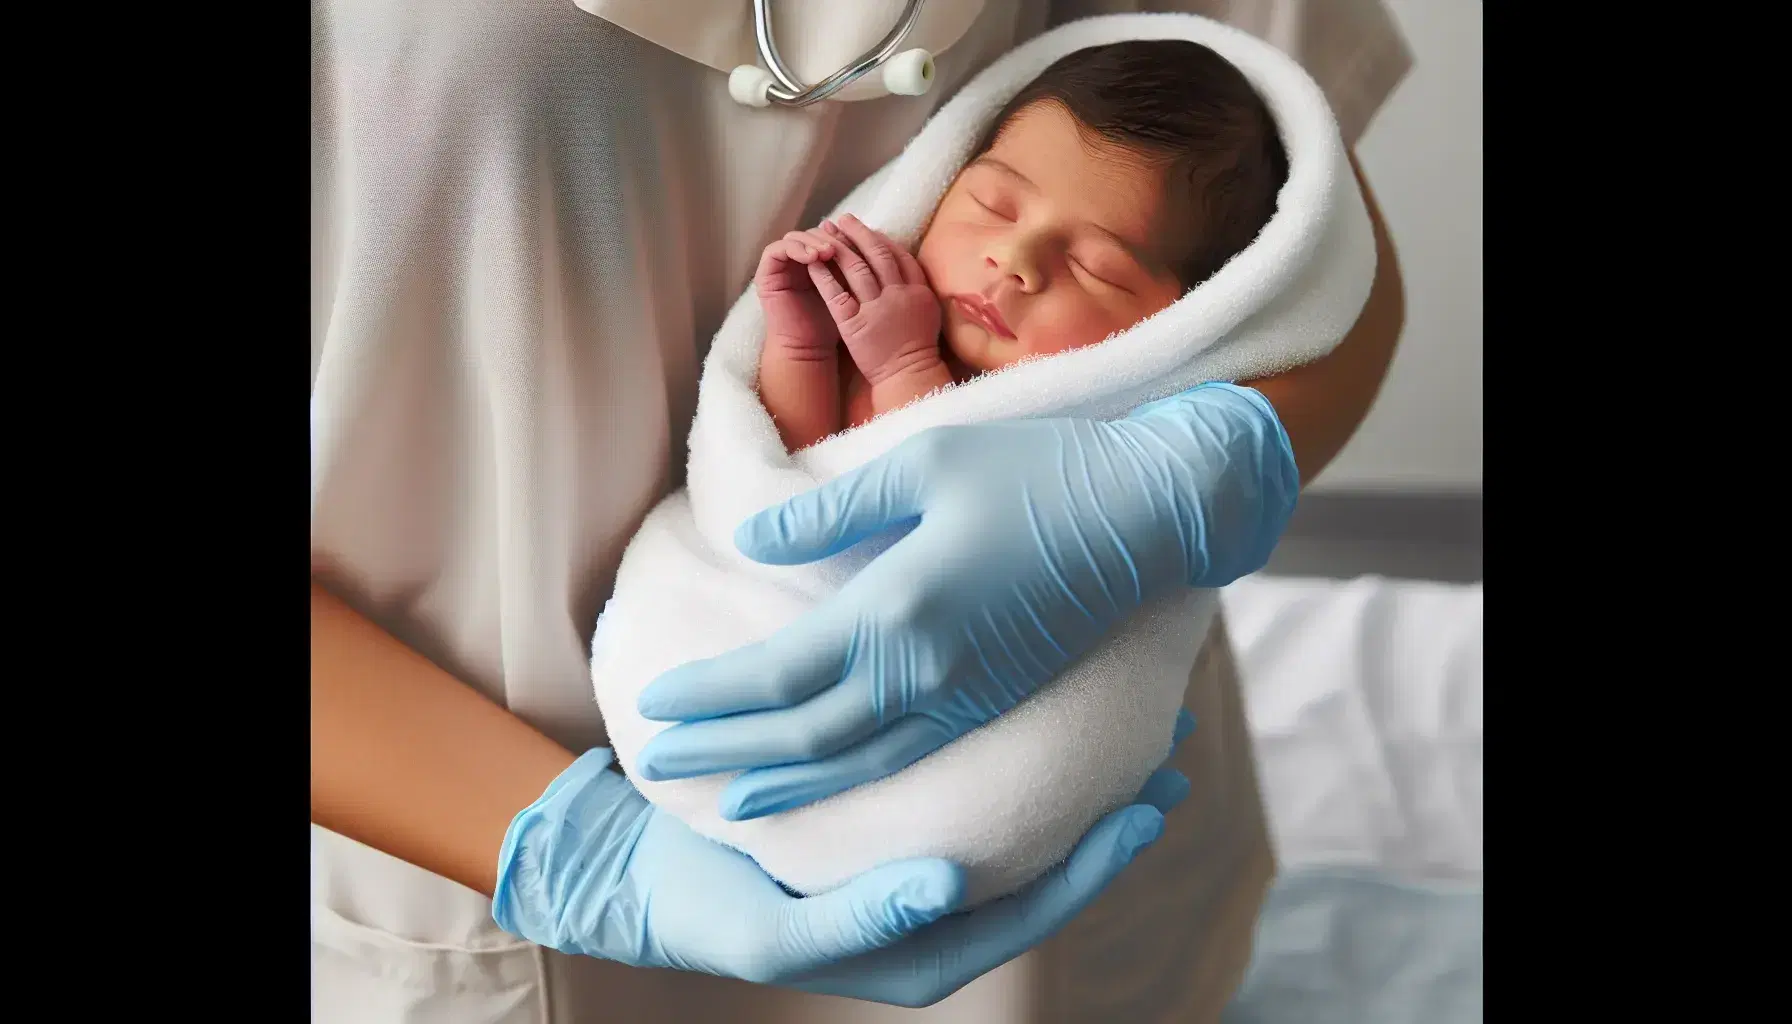 Manos de enfermera hispana en guantes estériles azules sosteniendo con cuidado a un recién nacido envuelto en una manta blanca, transmitiendo protección y ternura.